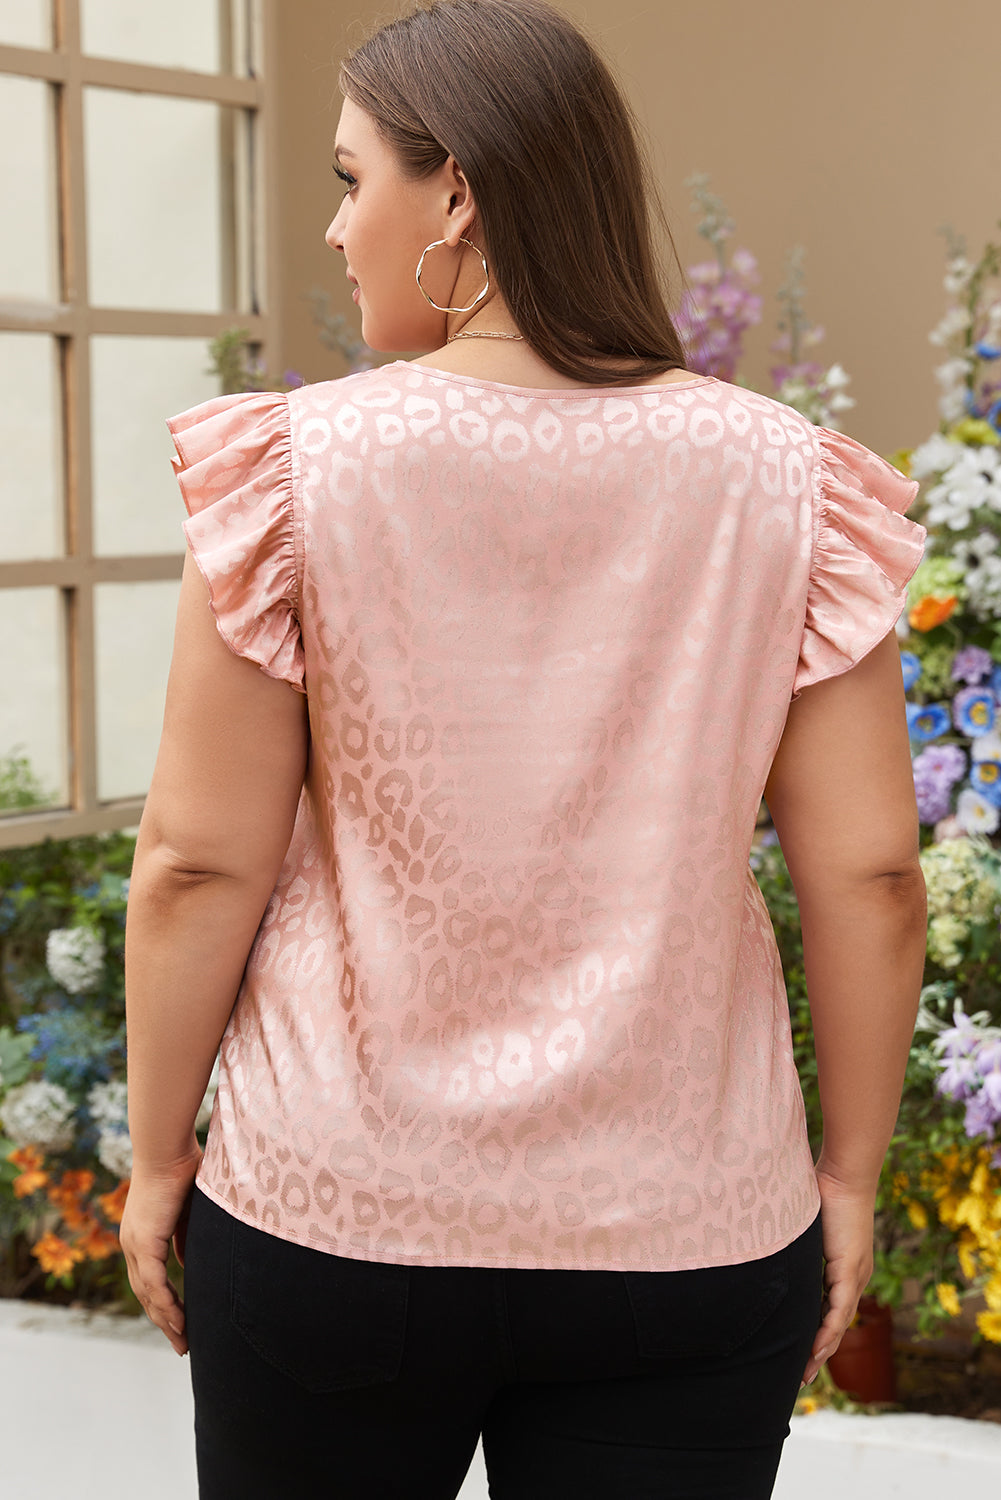 Rosa Plus-Size-Bluse aus Satin mit Leopardenmuster und gerüschten Flatterärmeln